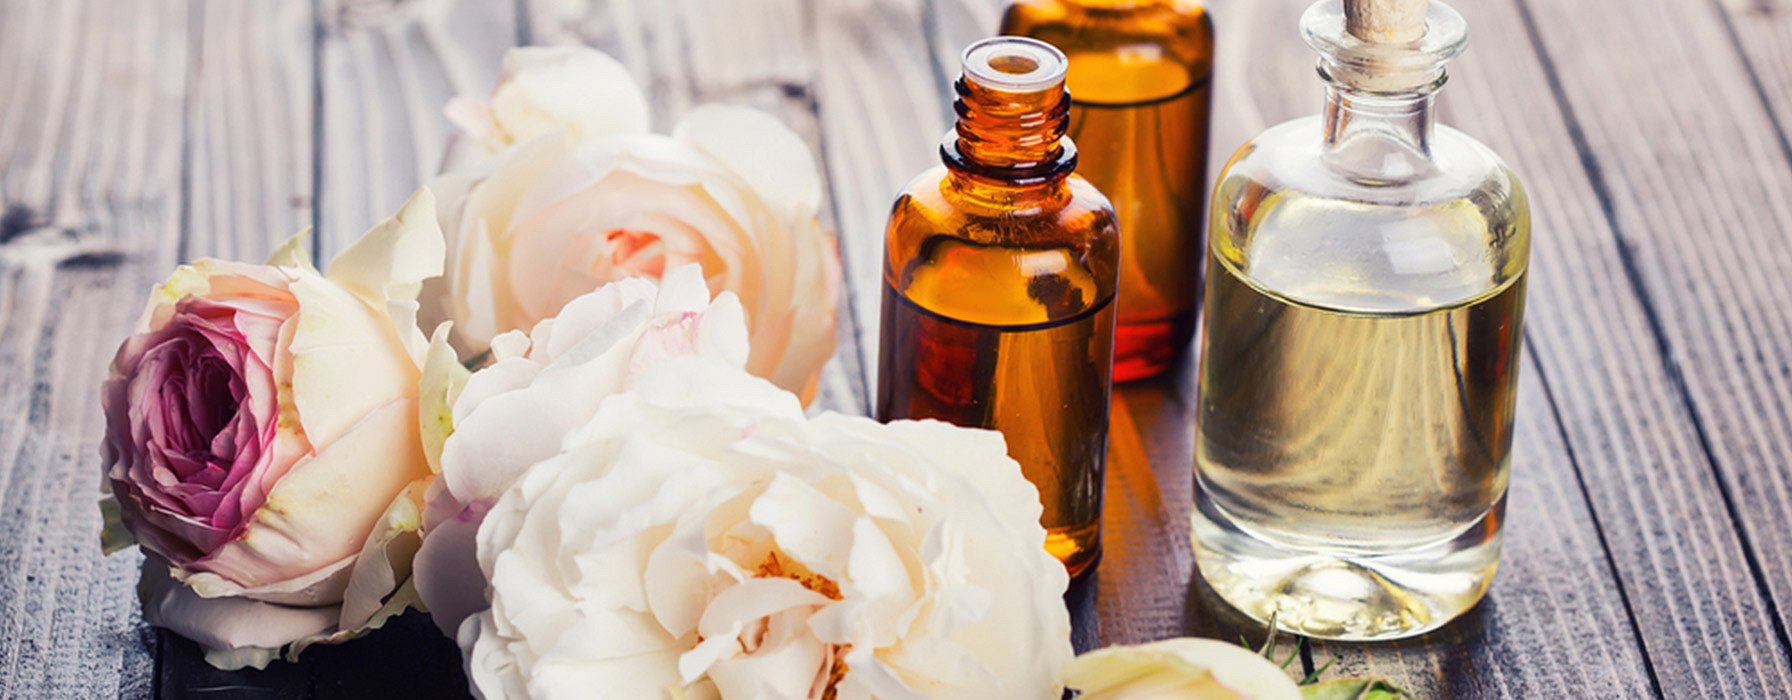 Parfums maison aux huiles essentielles – Panier des Sens